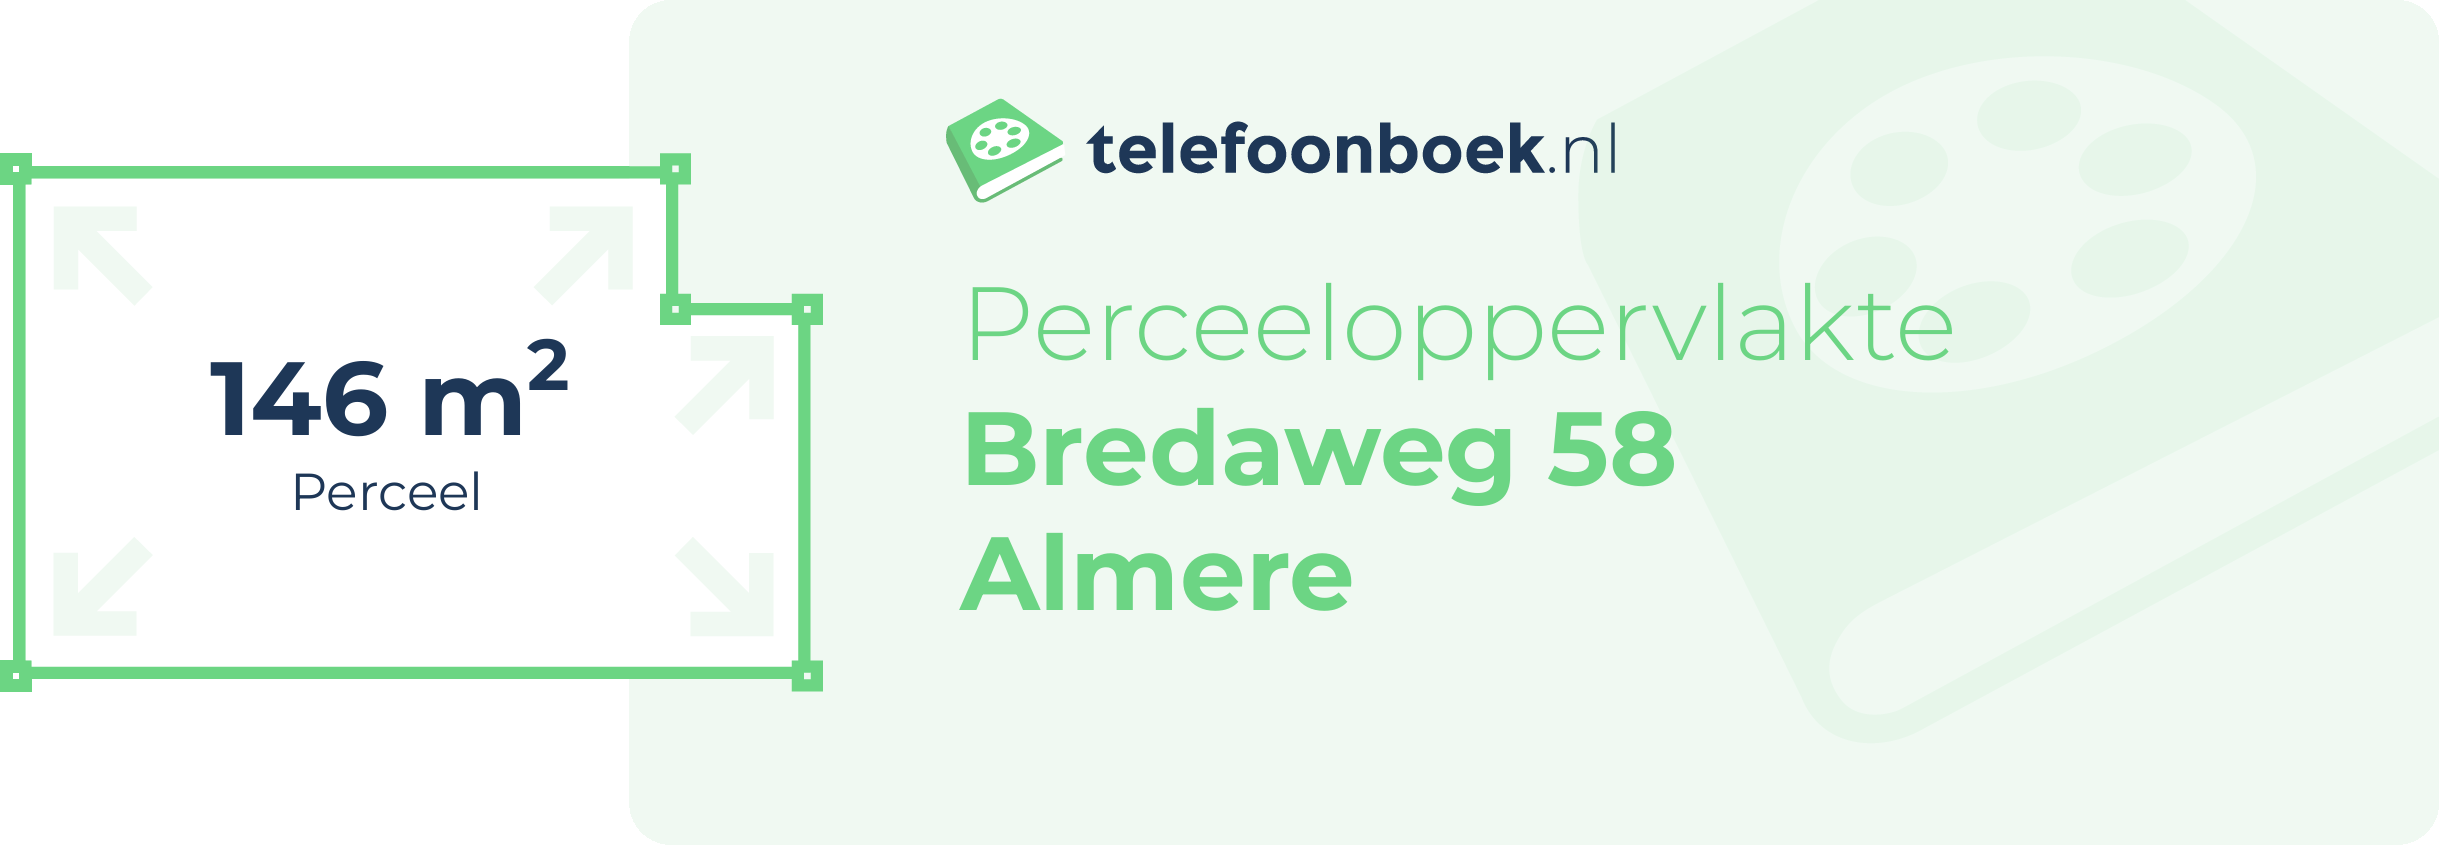 Perceeloppervlakte Bredaweg 58 Almere